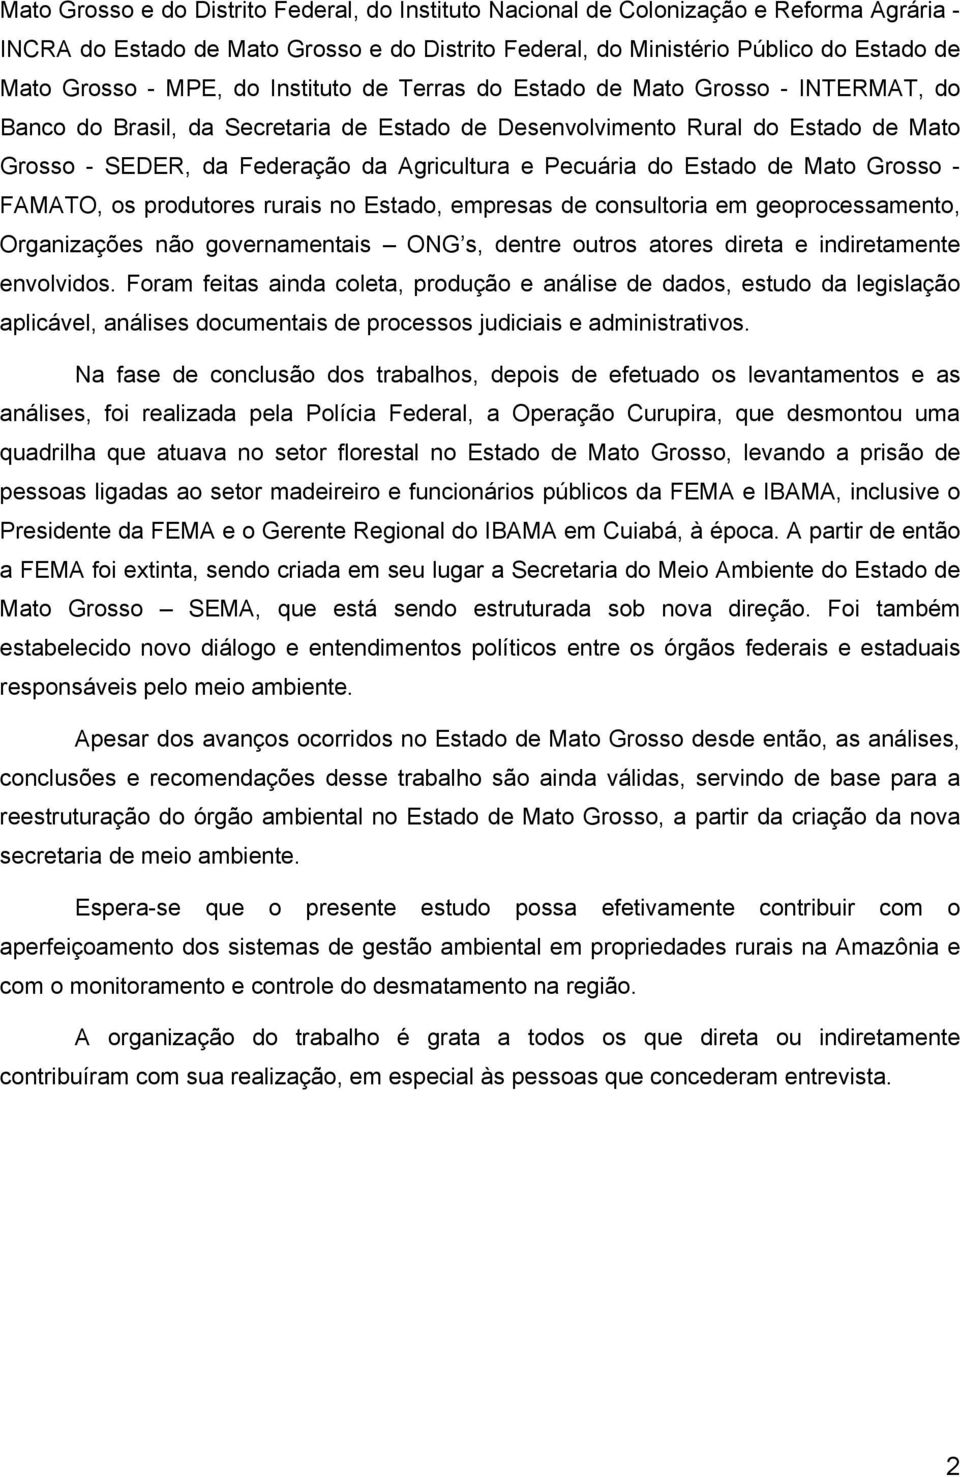 Pecuária do Estado de Mato Grosso - FAMATO, os produtores rurais no Estado, empresas de consultoria em geoprocessamento, Organizações não governamentais ONG s, dentre outros atores direta e